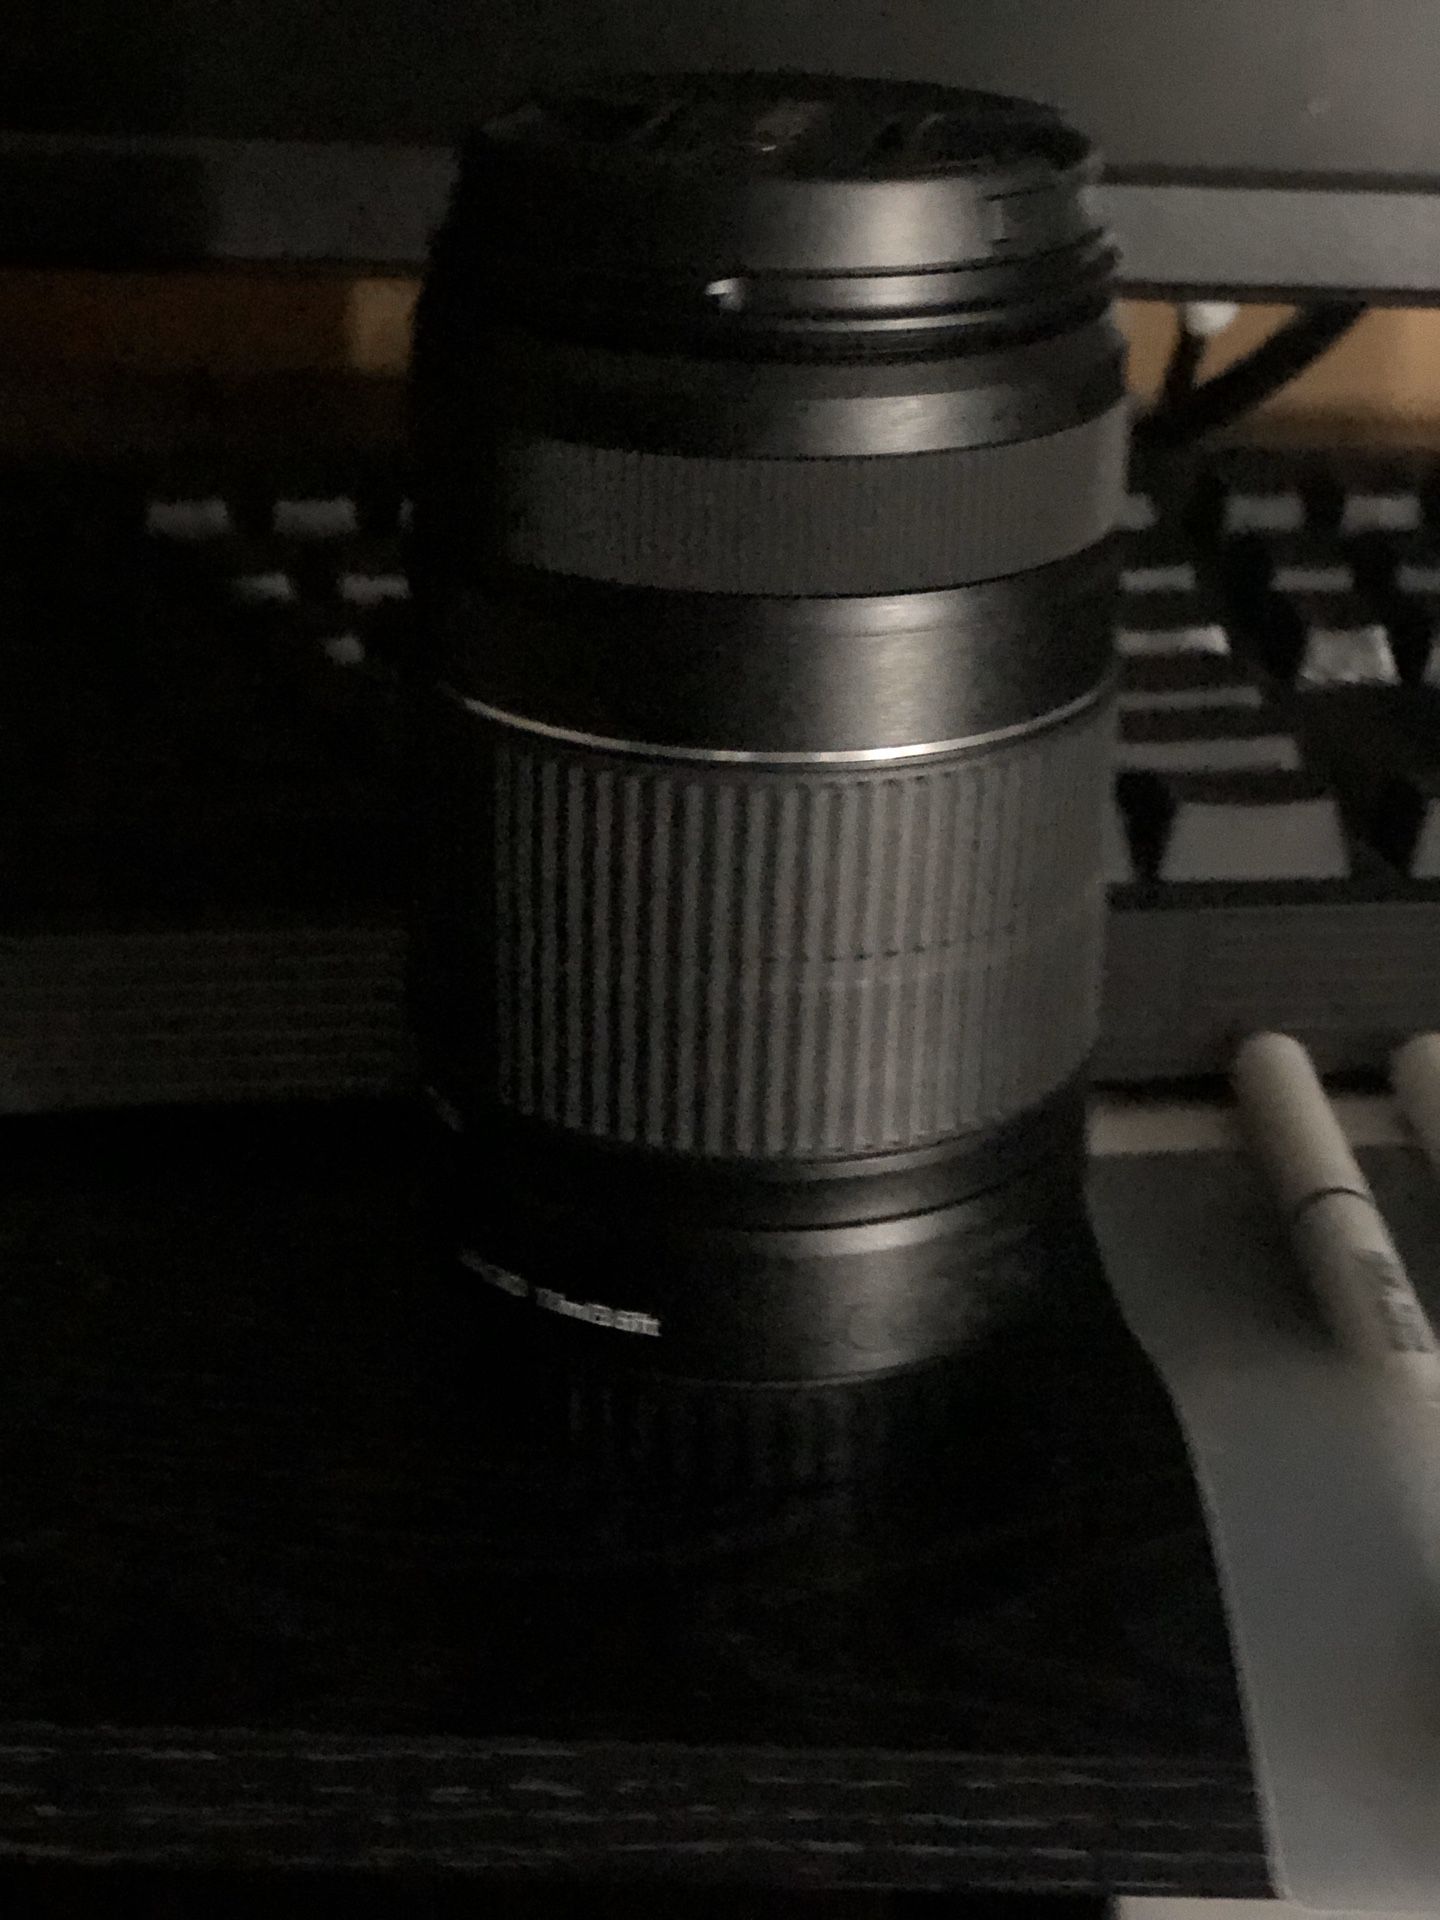 Canon Efs lens 55-250 mm